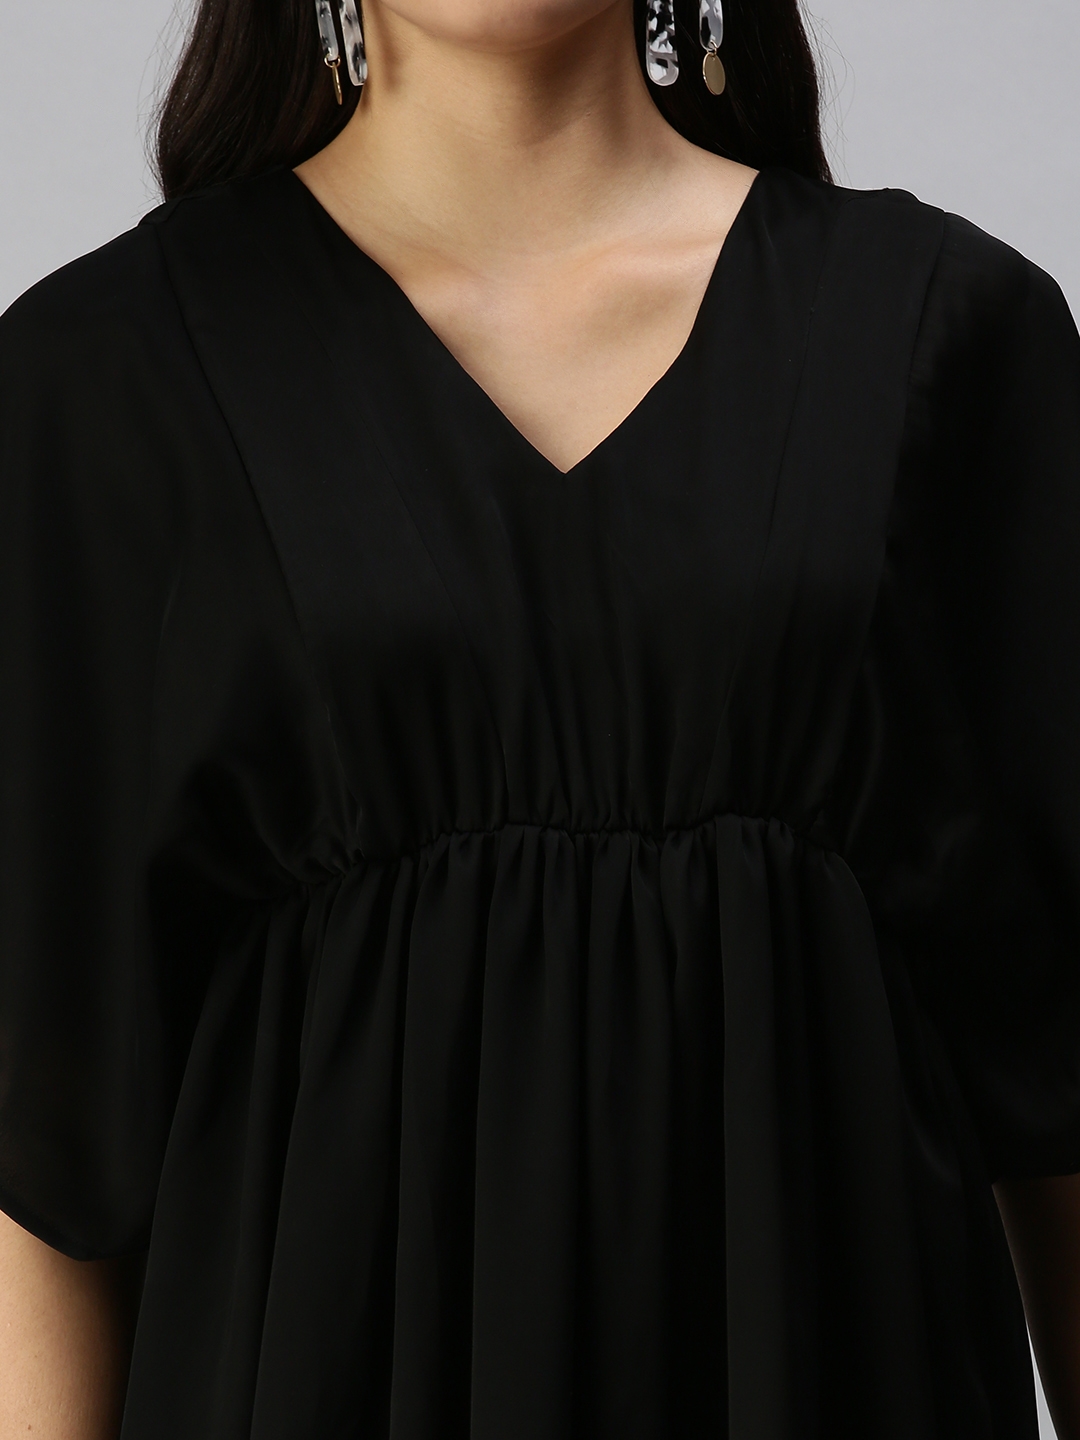 Showoff | SHOWOFF Women Black Solid V Neck Short Sleeves Above Knee A-Line Dress 4